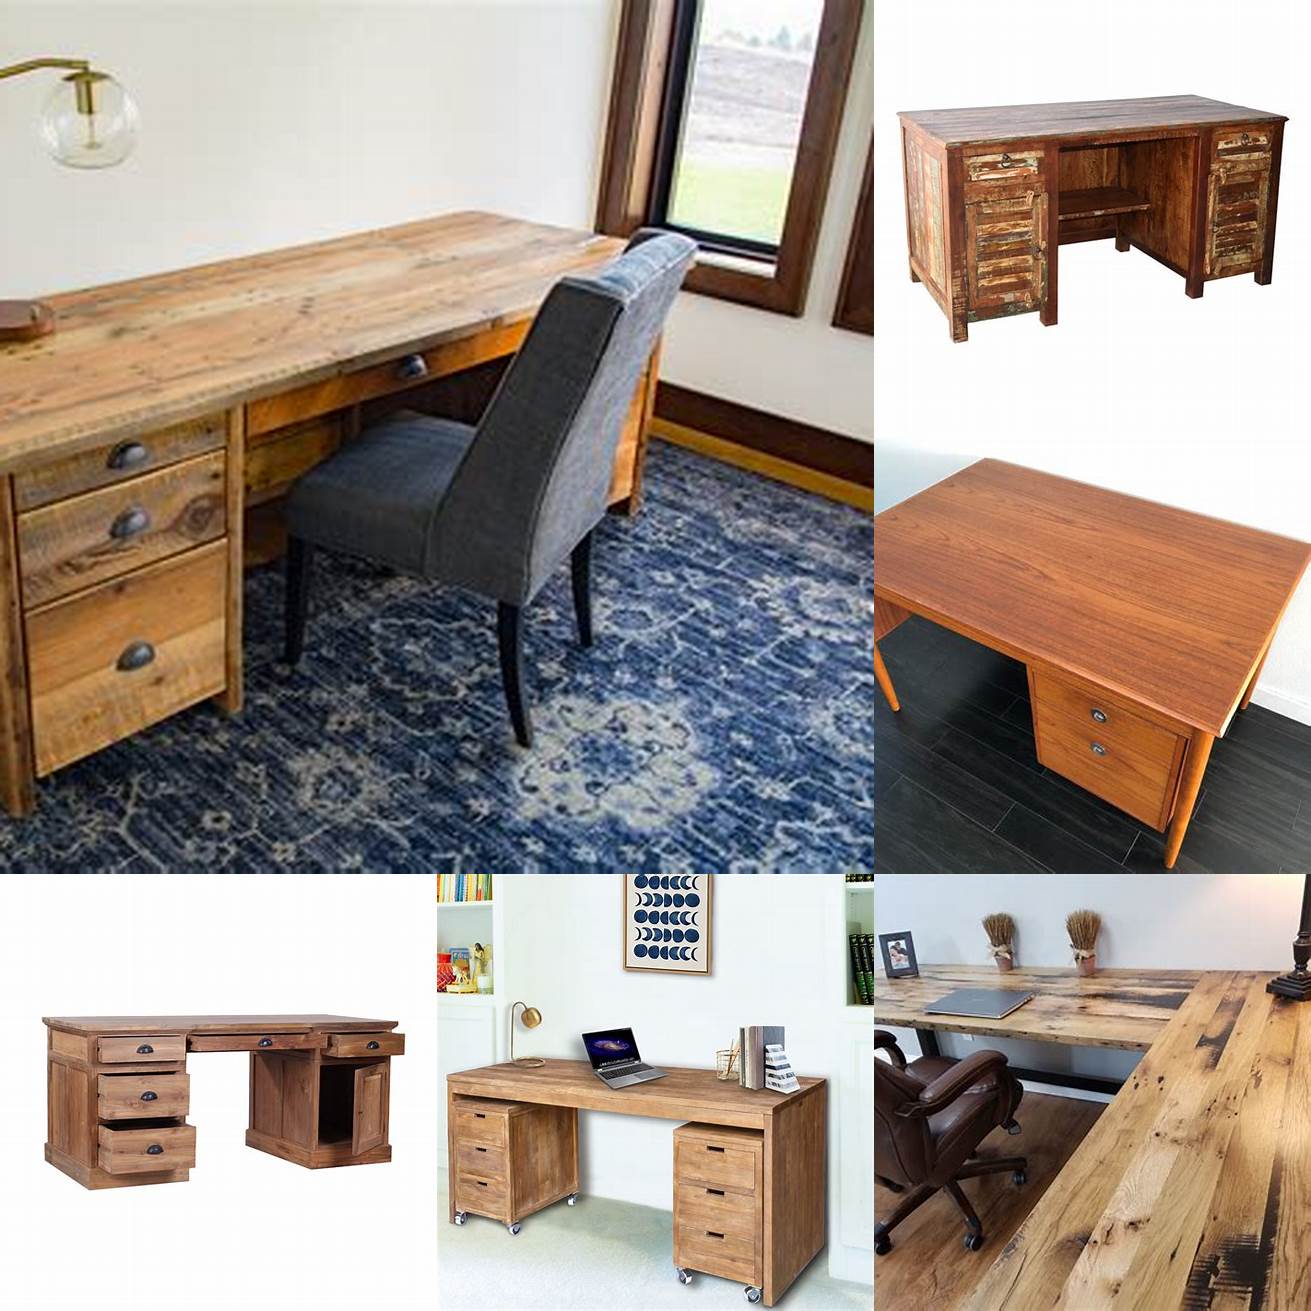 Reclaimed teak wood desk